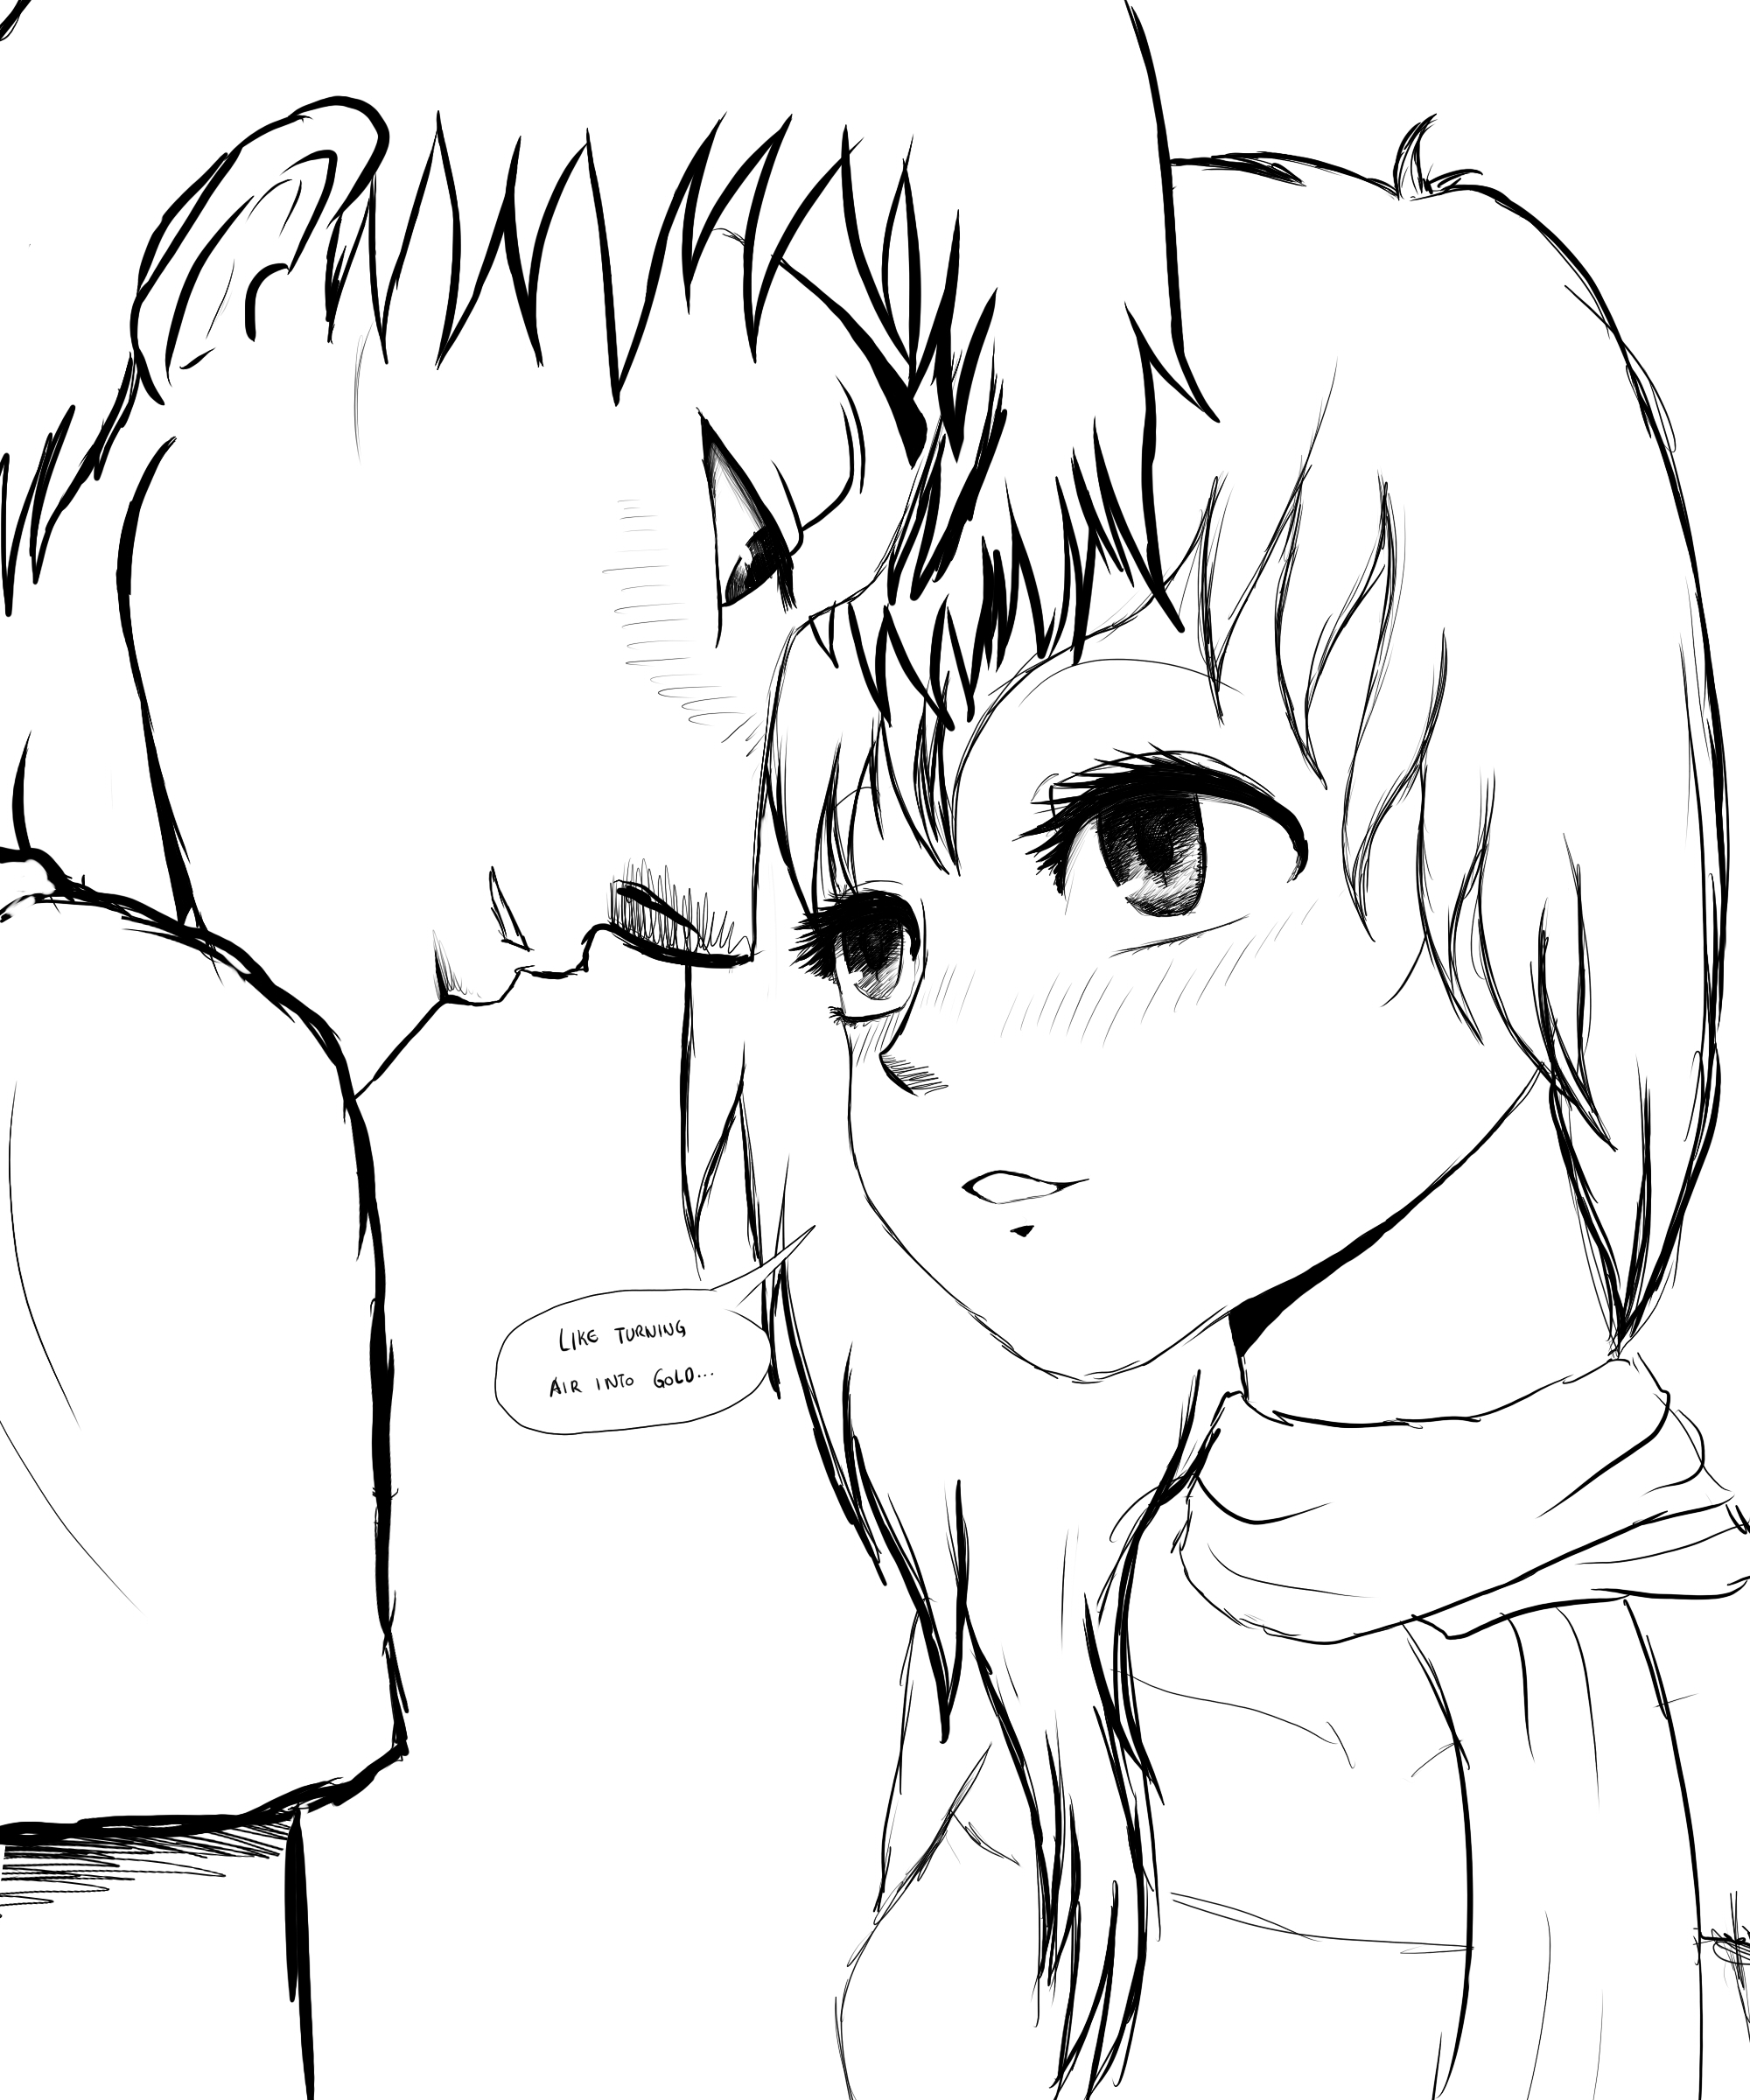 Wade and Luna (OC Manga Couple SKETCH) by SylunaHirokashi on DeviantArt